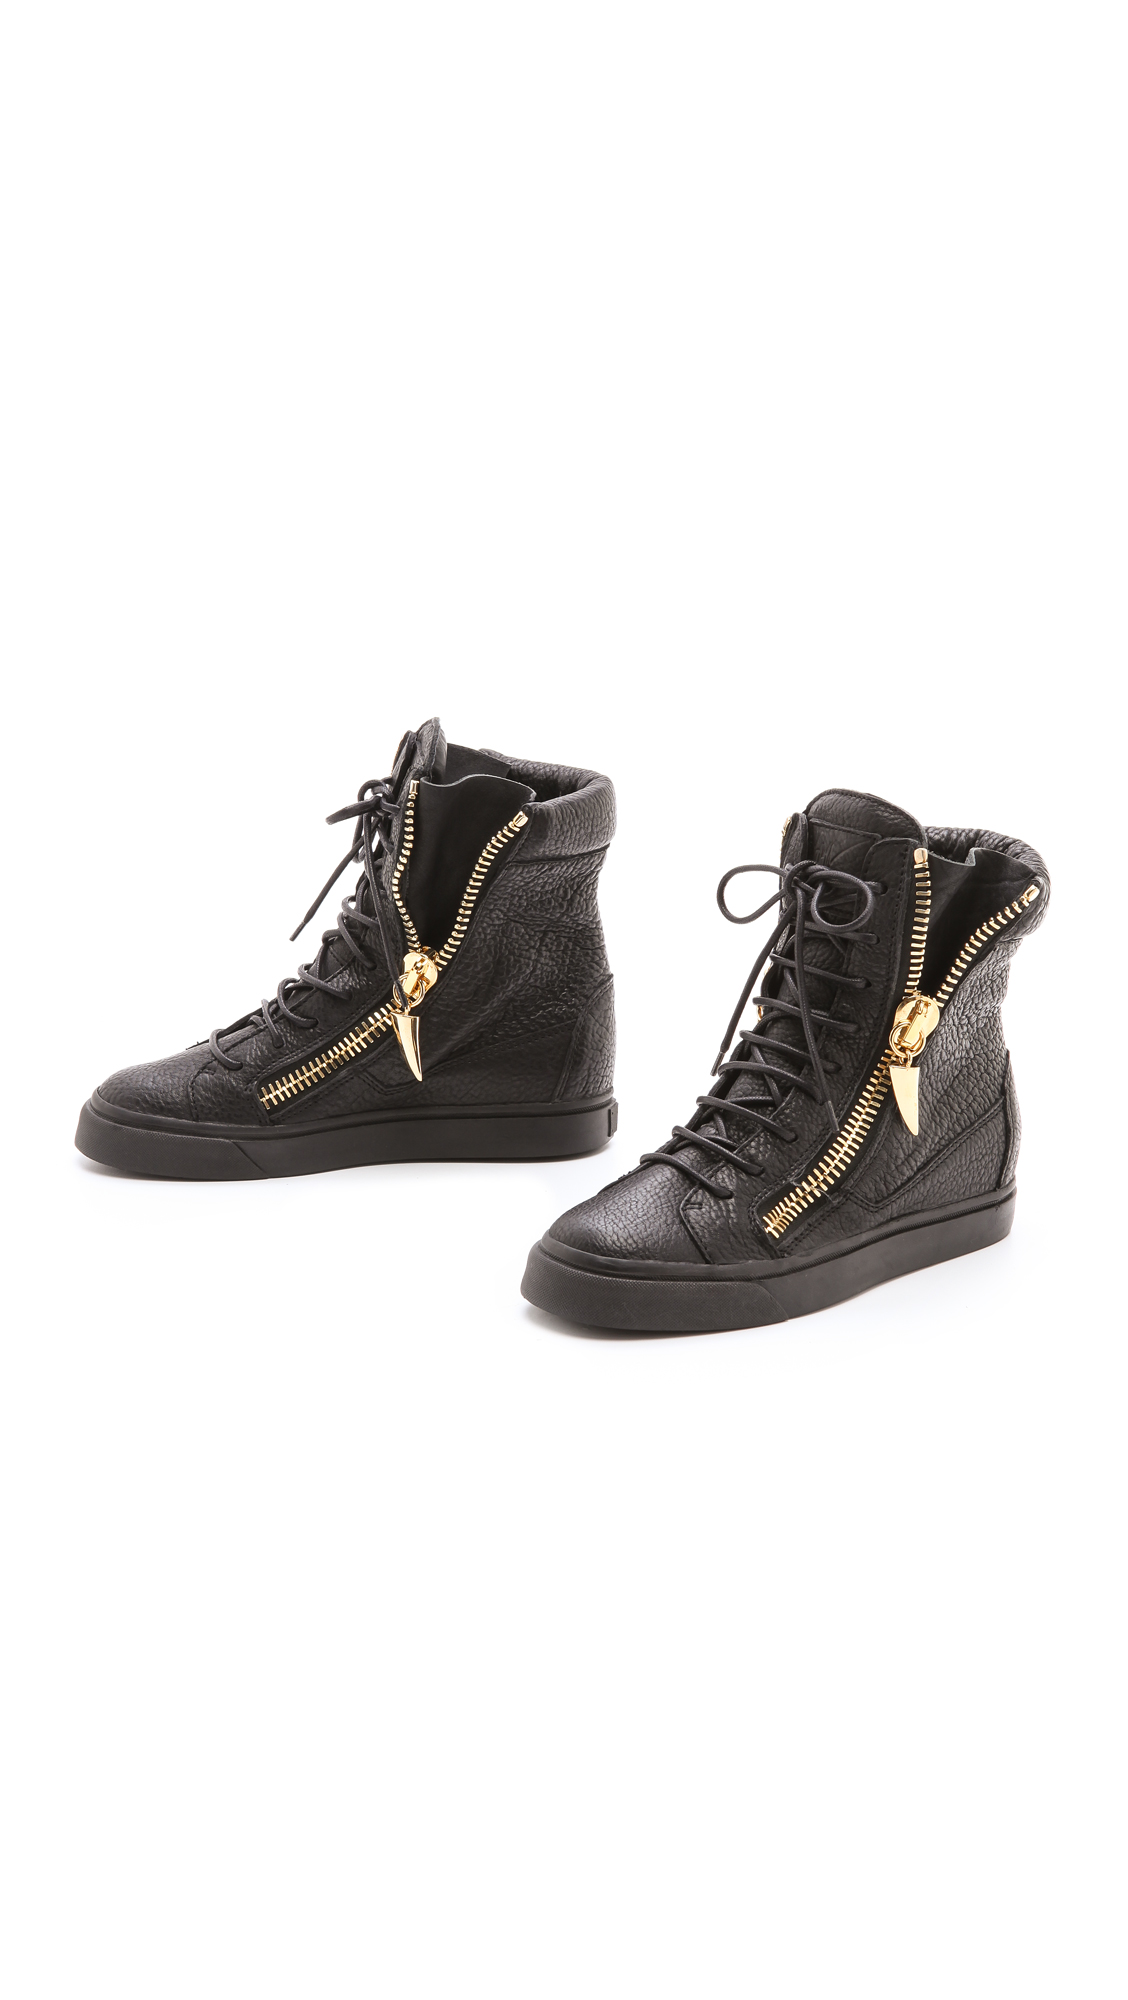 Lyst - Giuseppe Zanotti London Zip High Sneakers in Black